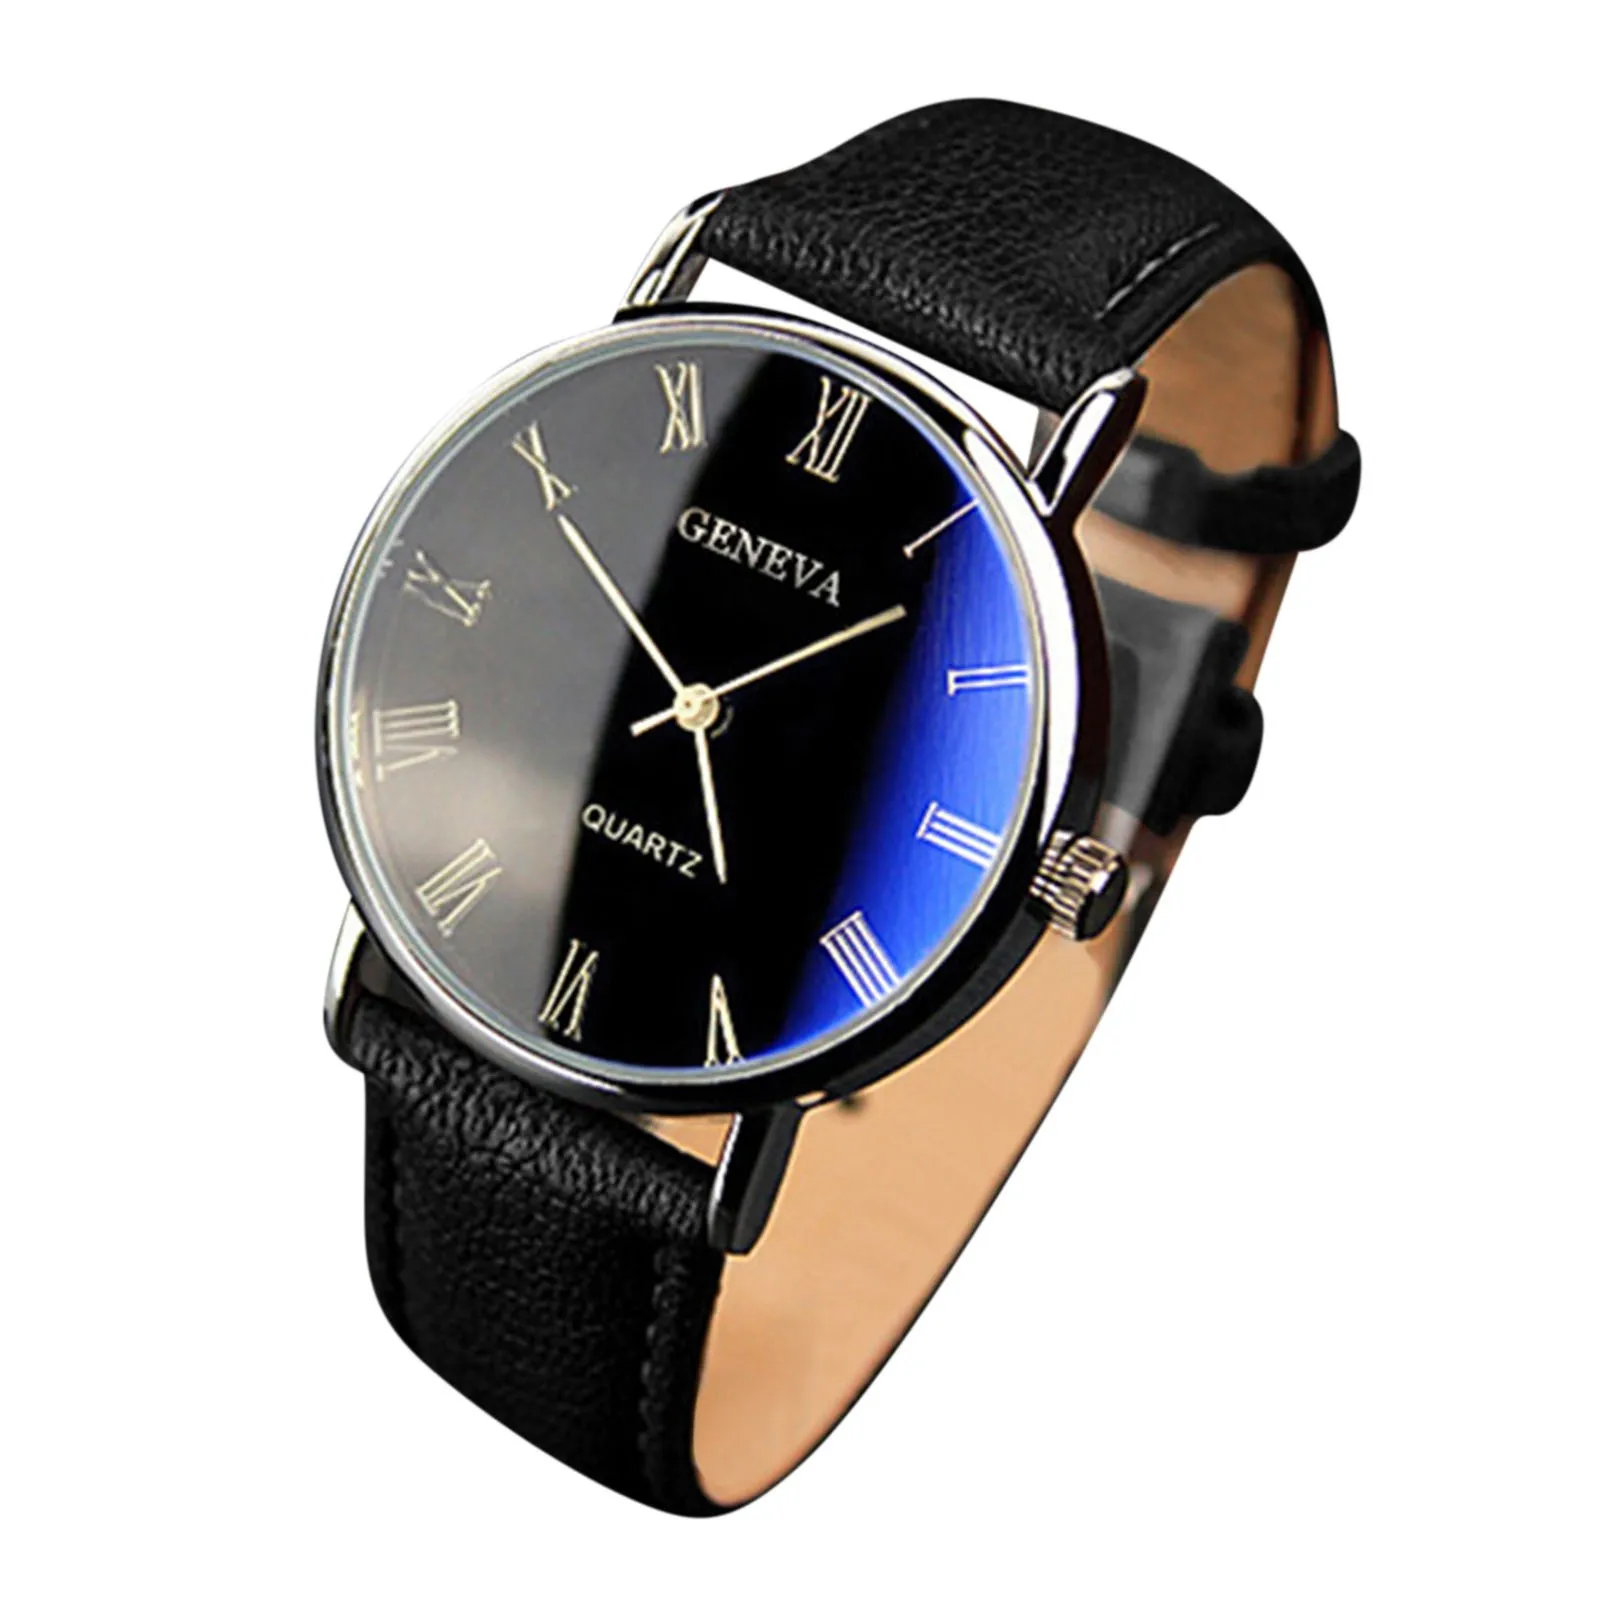 

Top Brand Luxury Men'S Watch Belt Watches Fashion Blu-Ray Roman Literal Business Men'S Watches Quartz Watch Classic Design